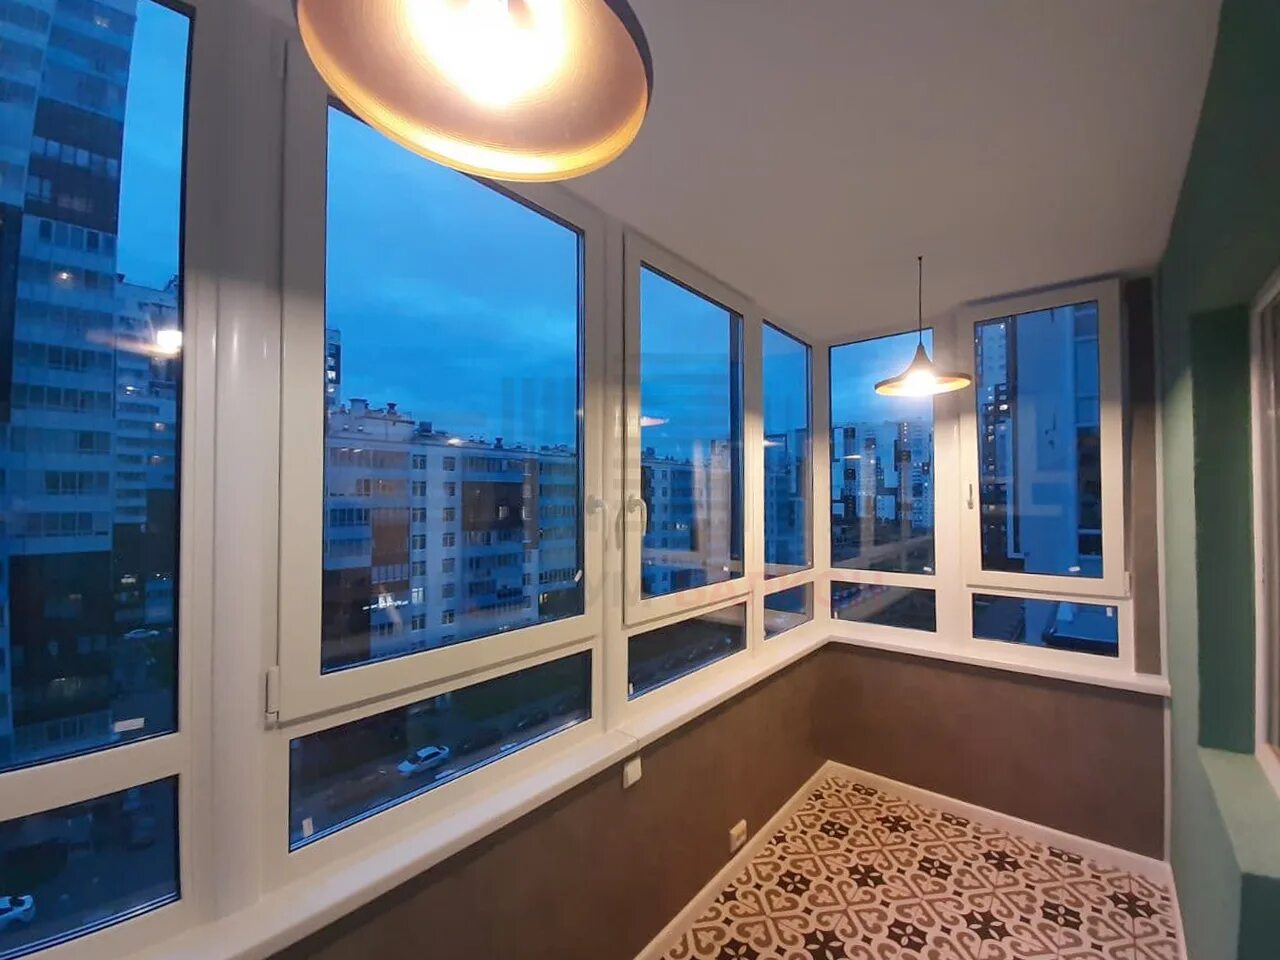 Северный балкон. Премиум балкон. Балконы Санкт-Петербурга. Славянка балконы СПБ.